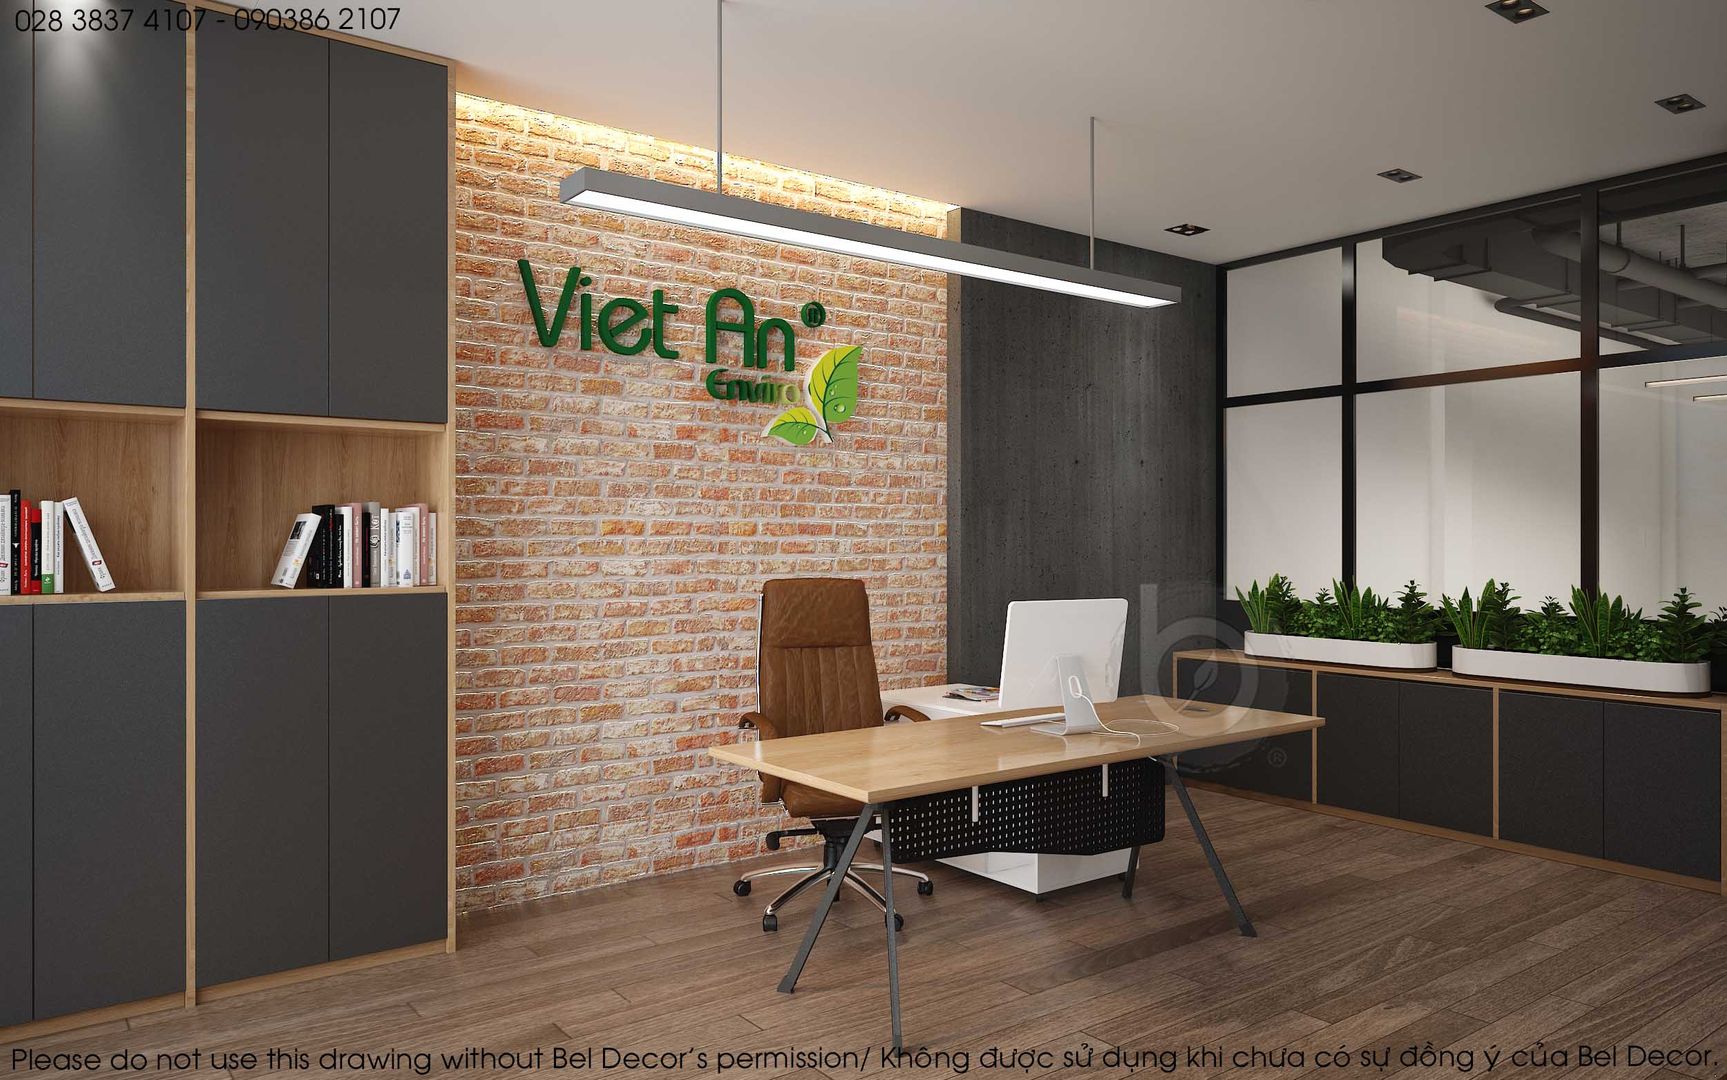 Viet An Office, Bel Decor Bel Decor